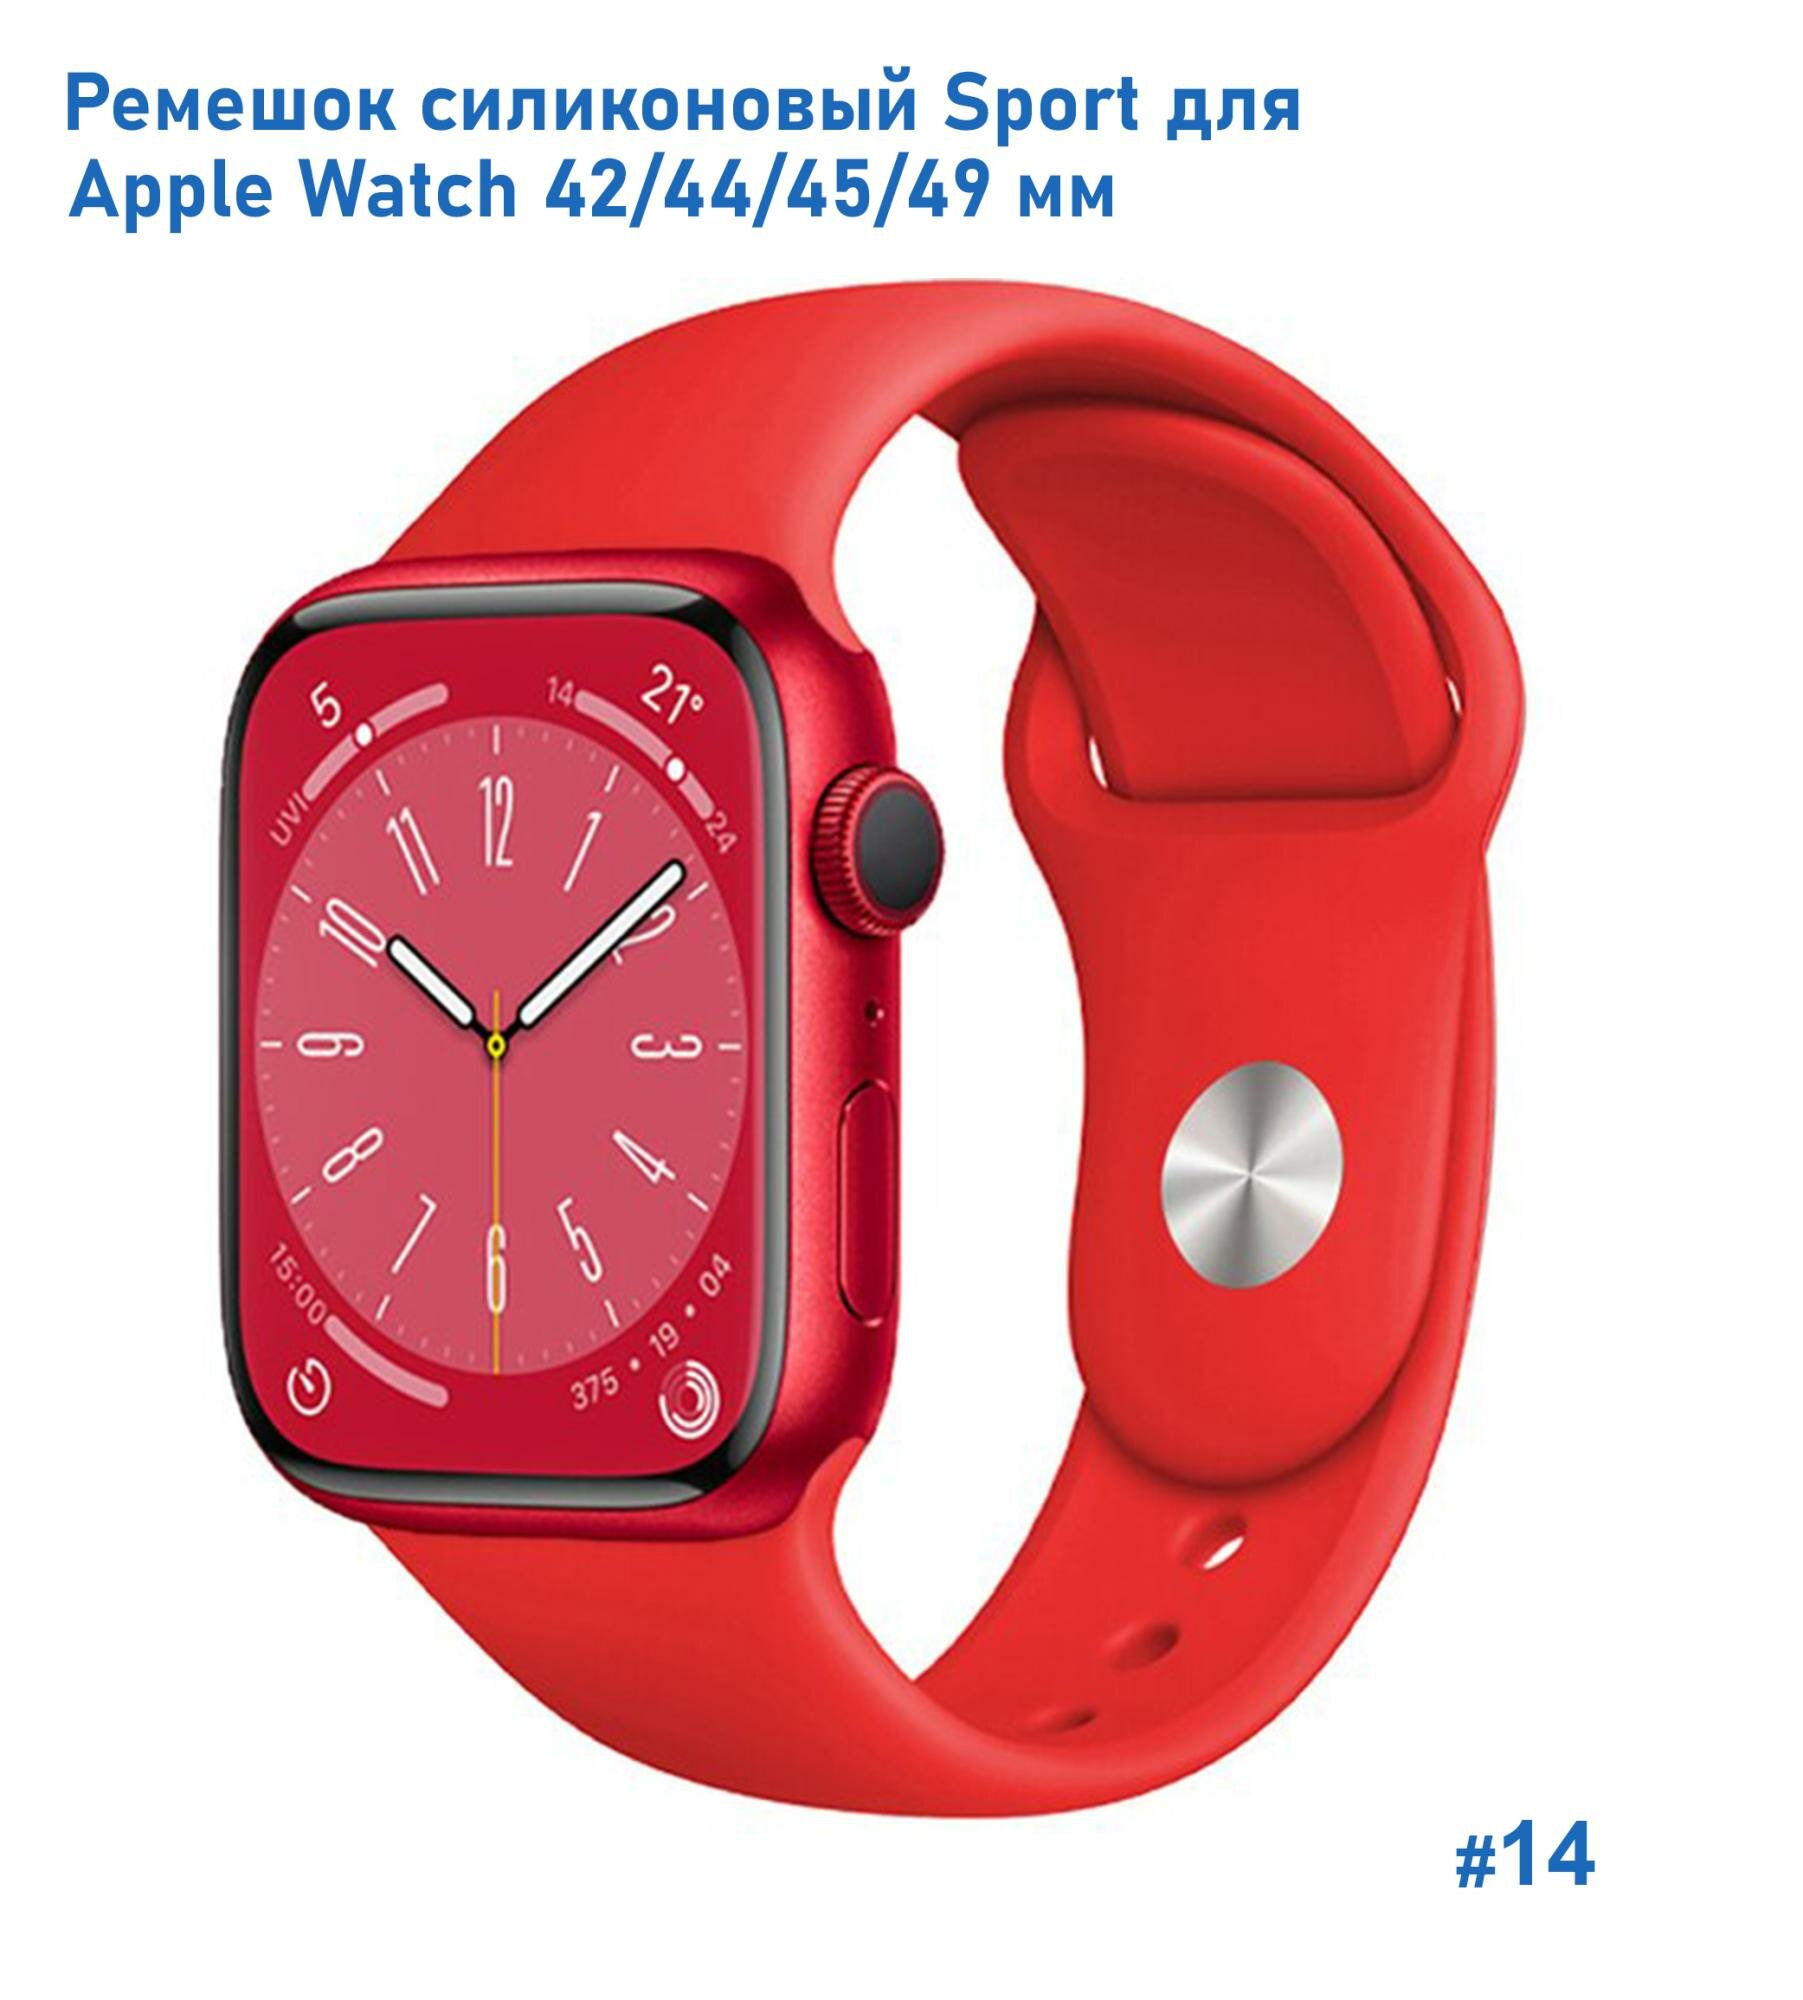 Ремешок силиконовый Sport для Apple Watch 42/44/45/49 мм 235мм на кнопке ярко-зеленый (31)